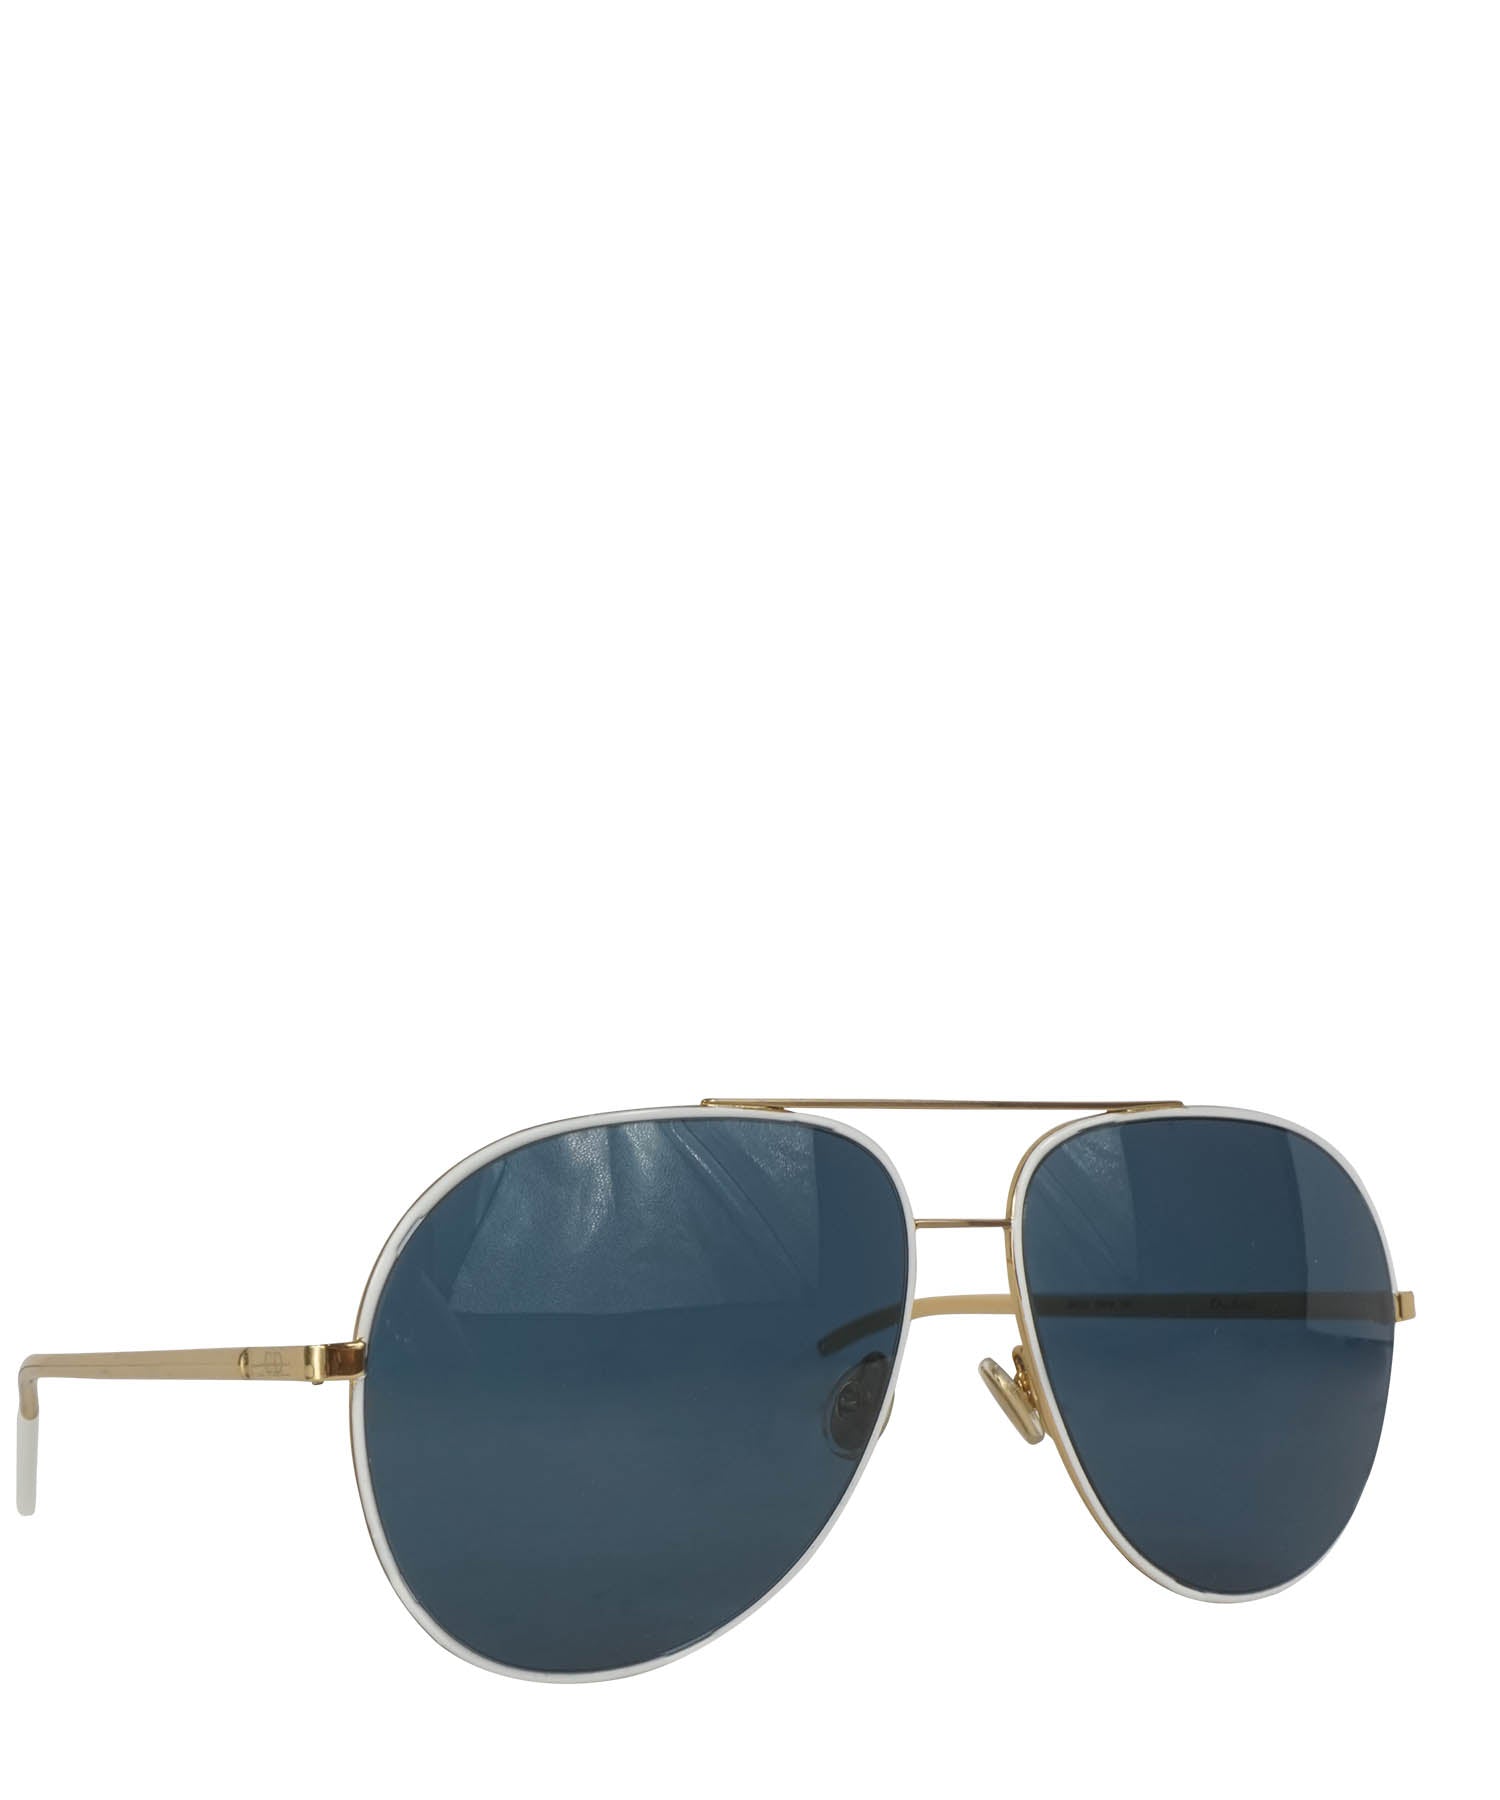 Louis Vuitton 2021 My Fair Lady Sunglasses - Black Sunglasses, Accessories  - LOU799183